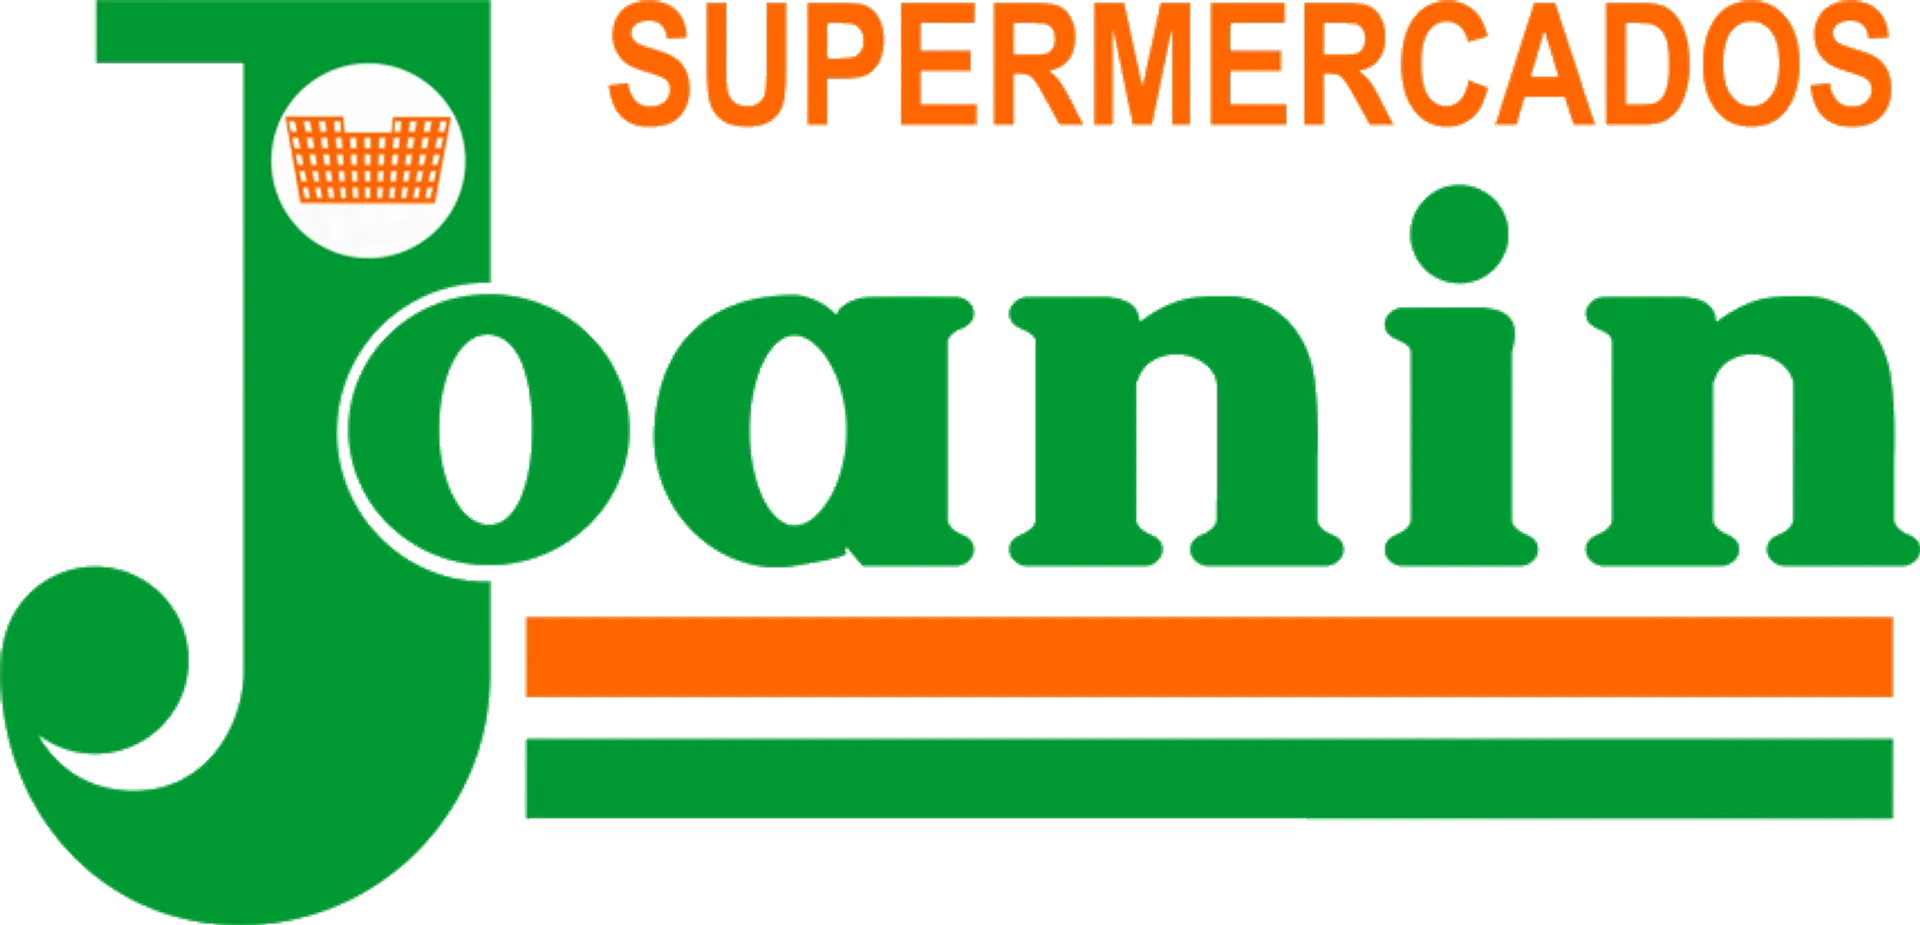 SUPERMERCADOS JOANIN logo